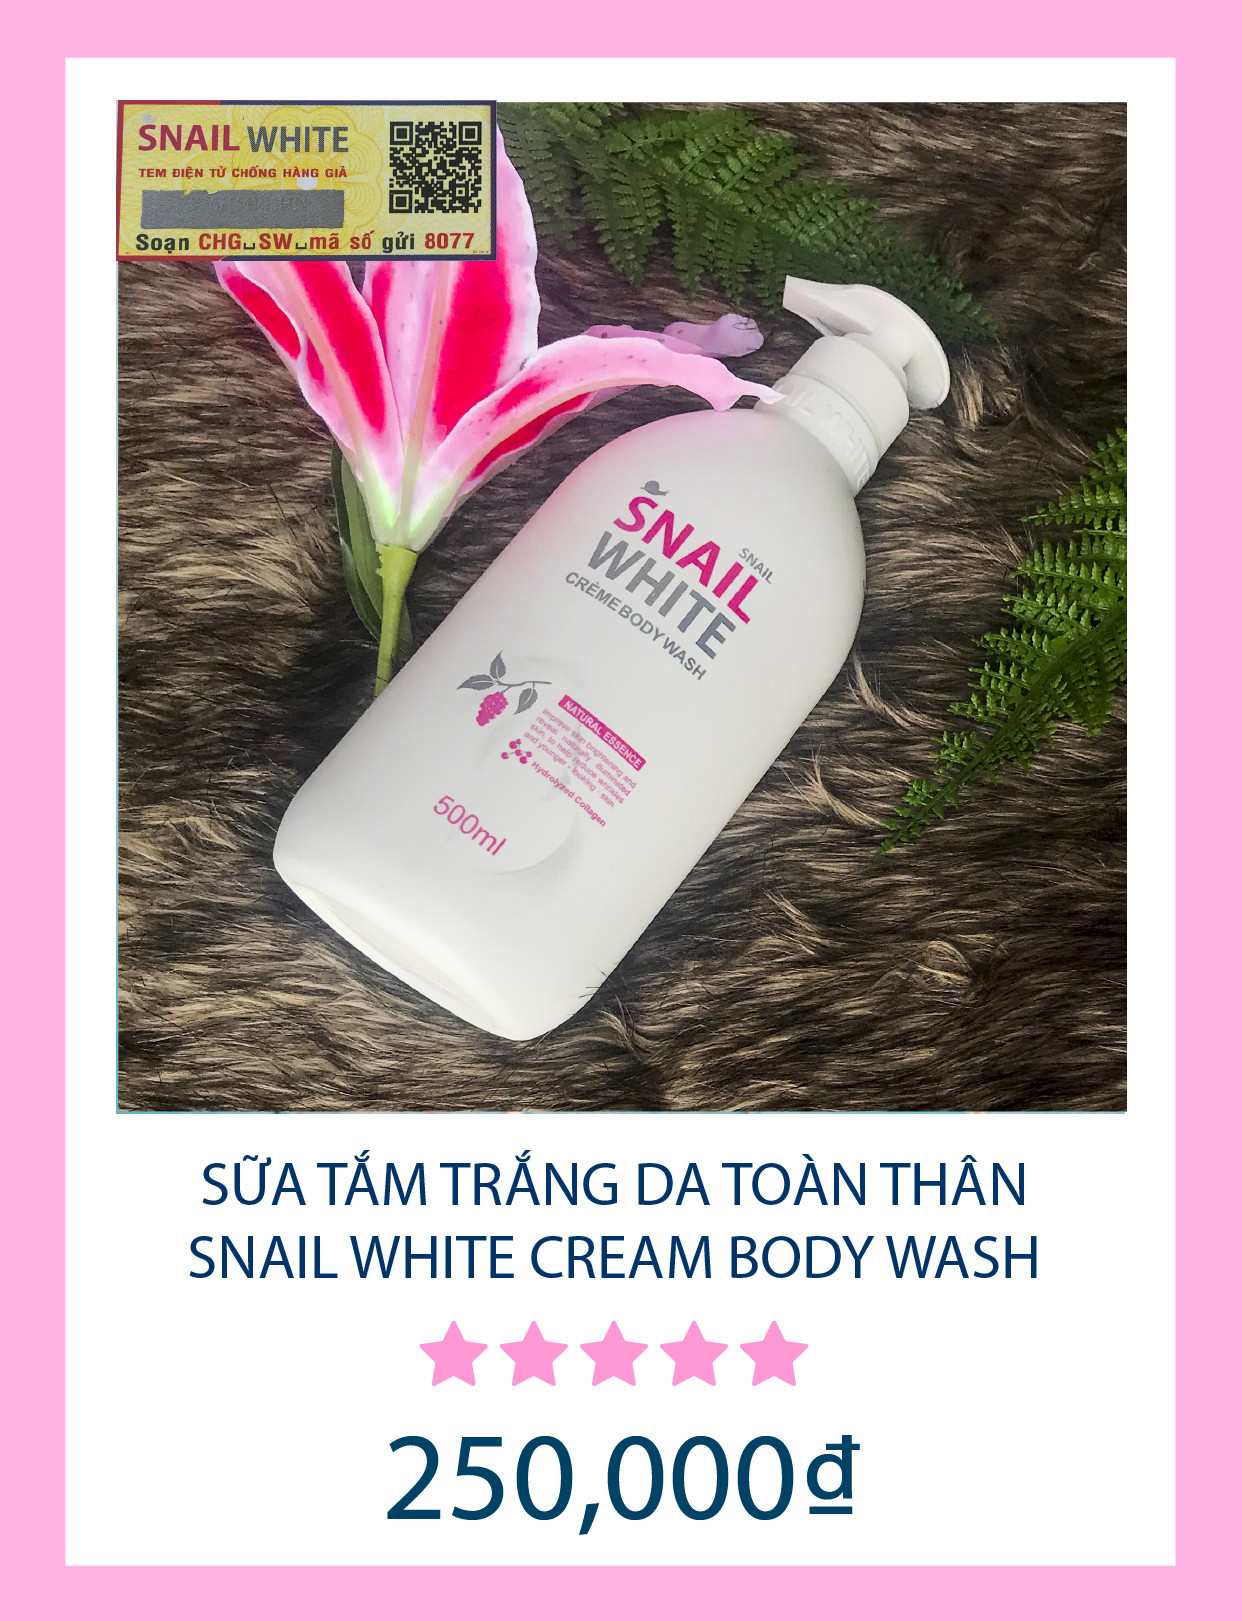 Sữa tắm snail white creme body wash